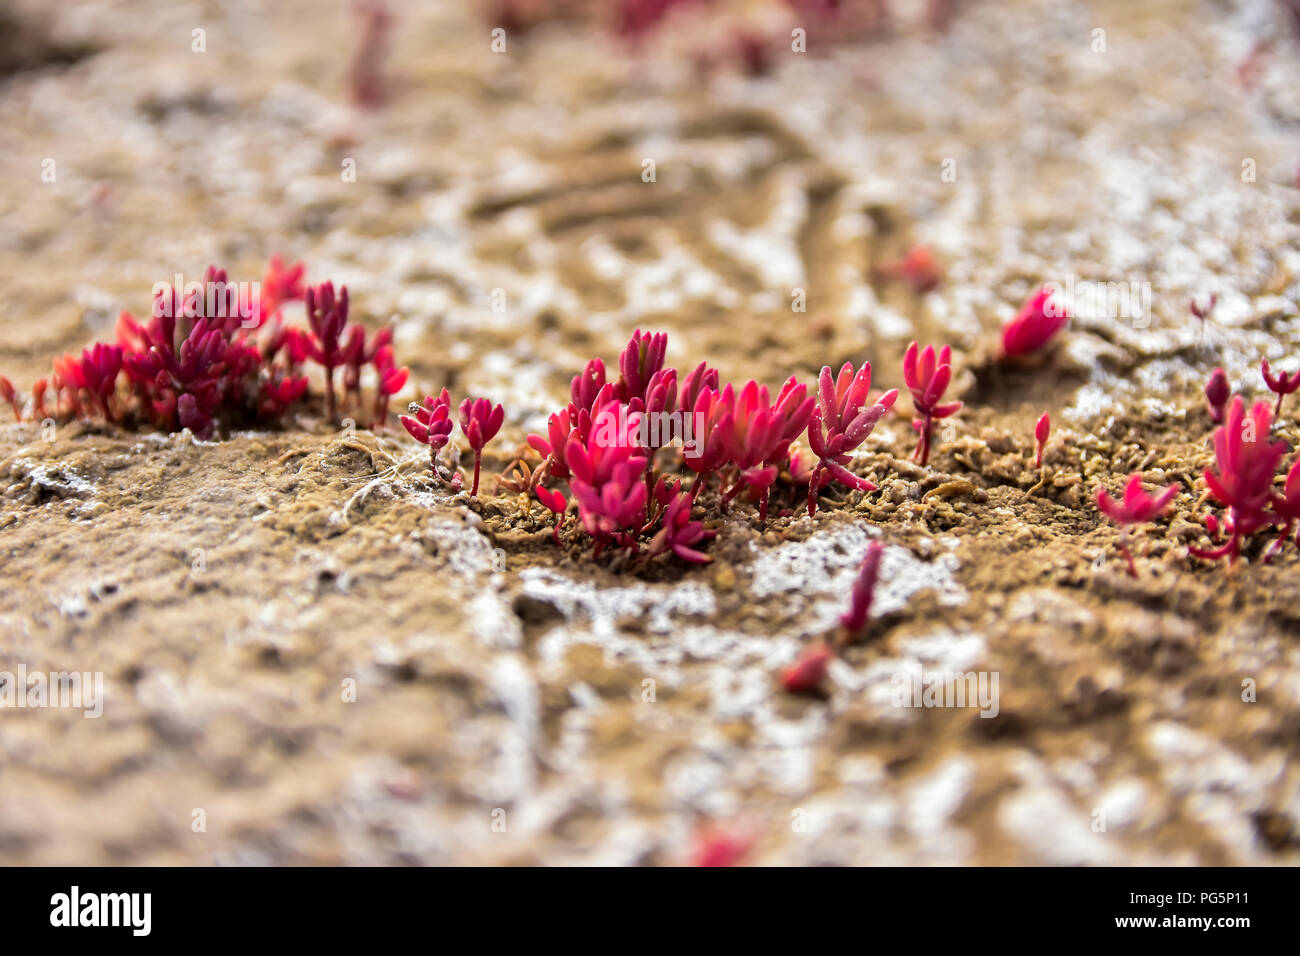 Pflanzen, die in einem trockenen Wuchs und verlassenen Ort mit salzigem und versteinerte Oberfläche, in Miramar, Cordoba, Argentinien Stockfoto